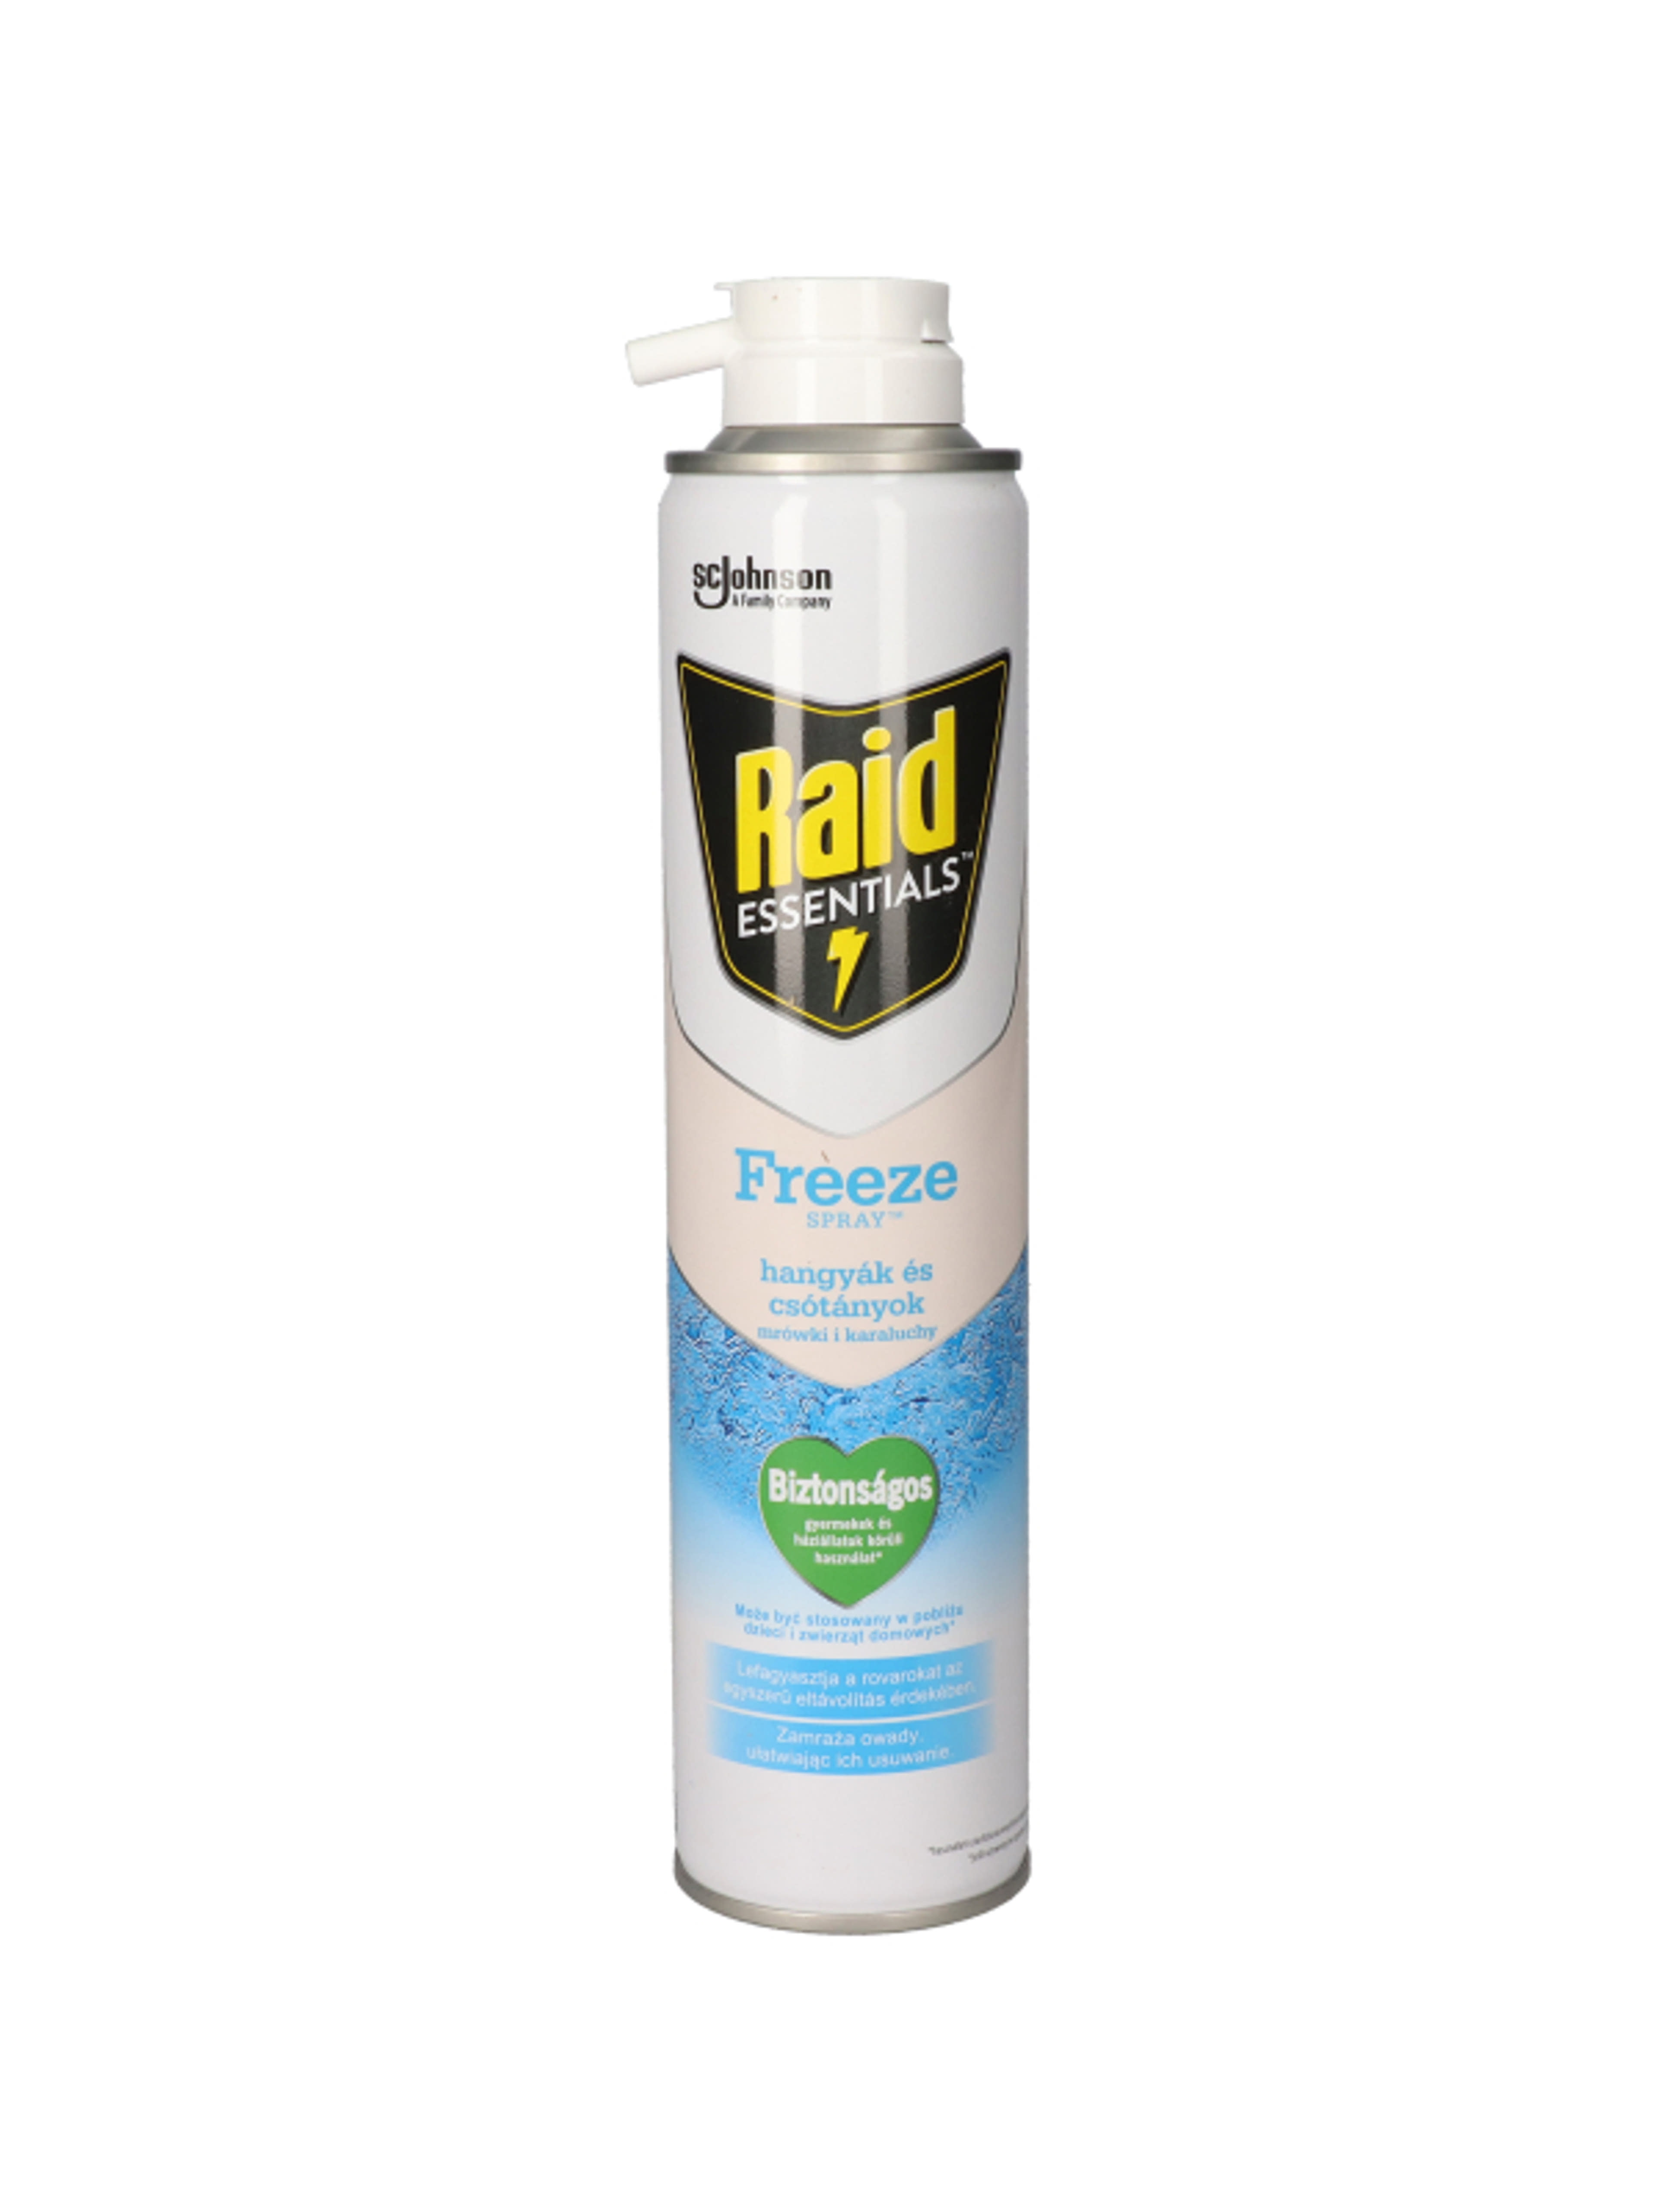 Raid Essentials Freeze rovarfagyasztó spray - 350 ml